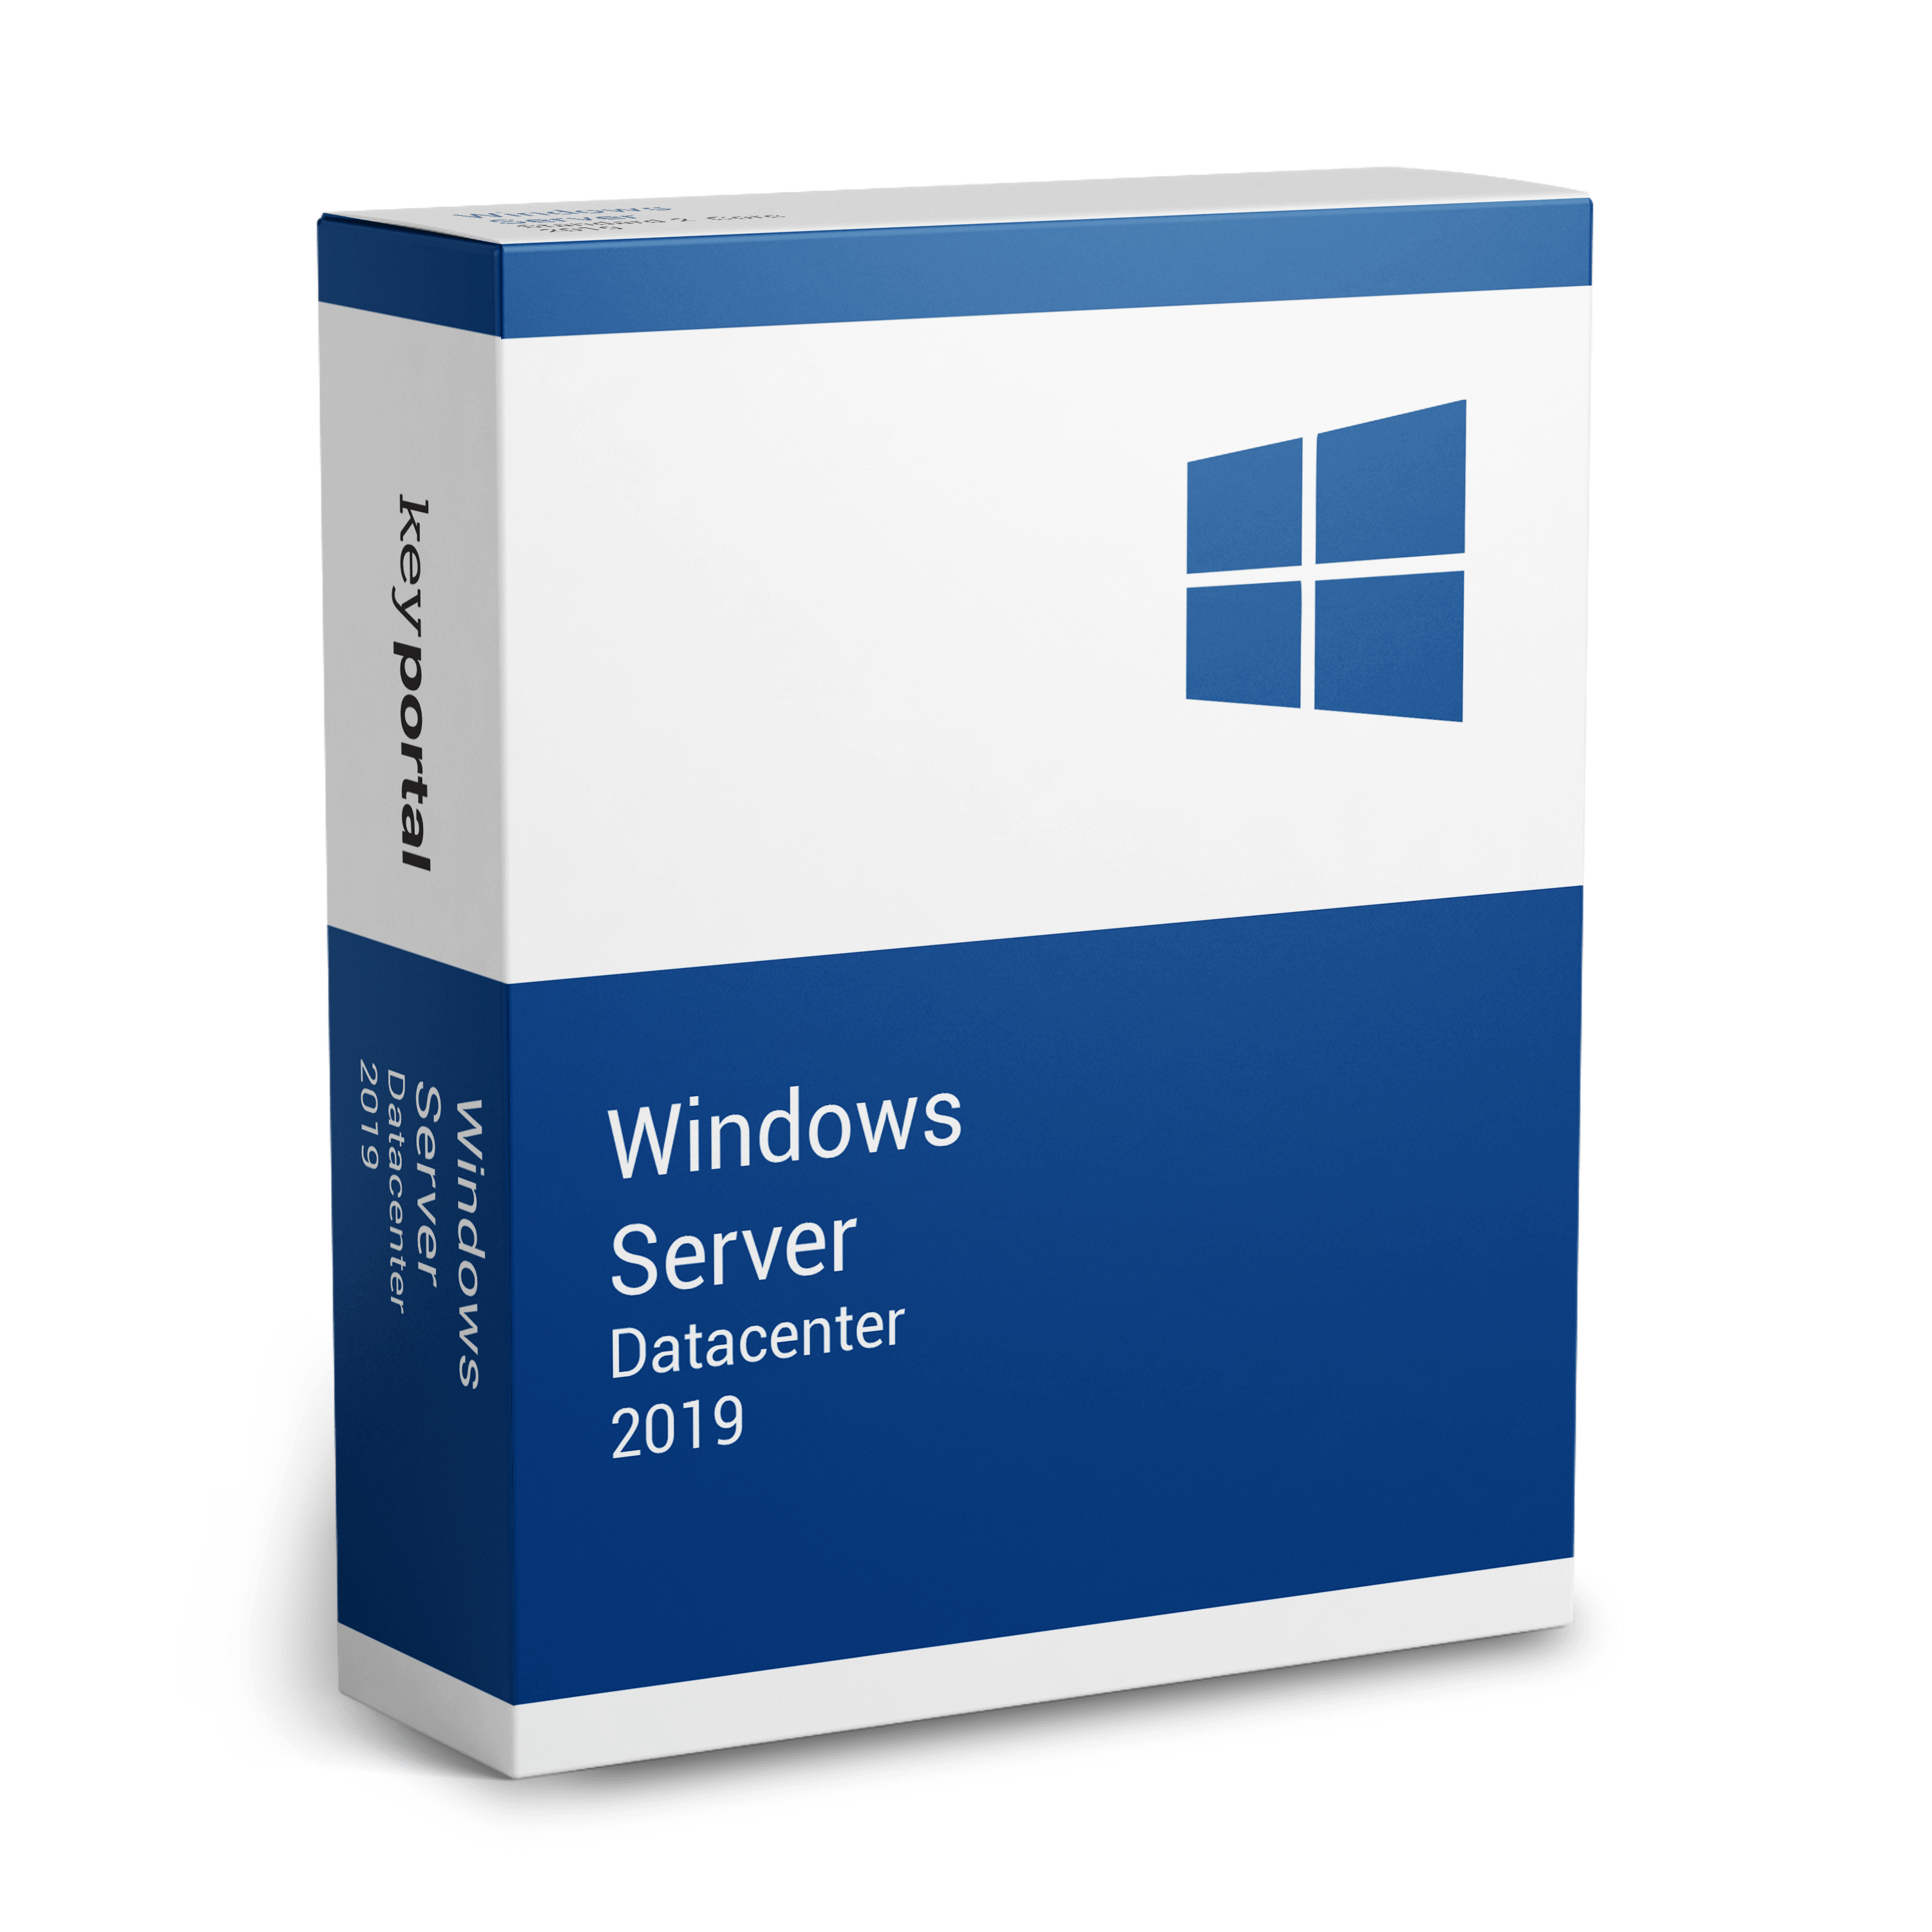 download windows server 2019 datacenter